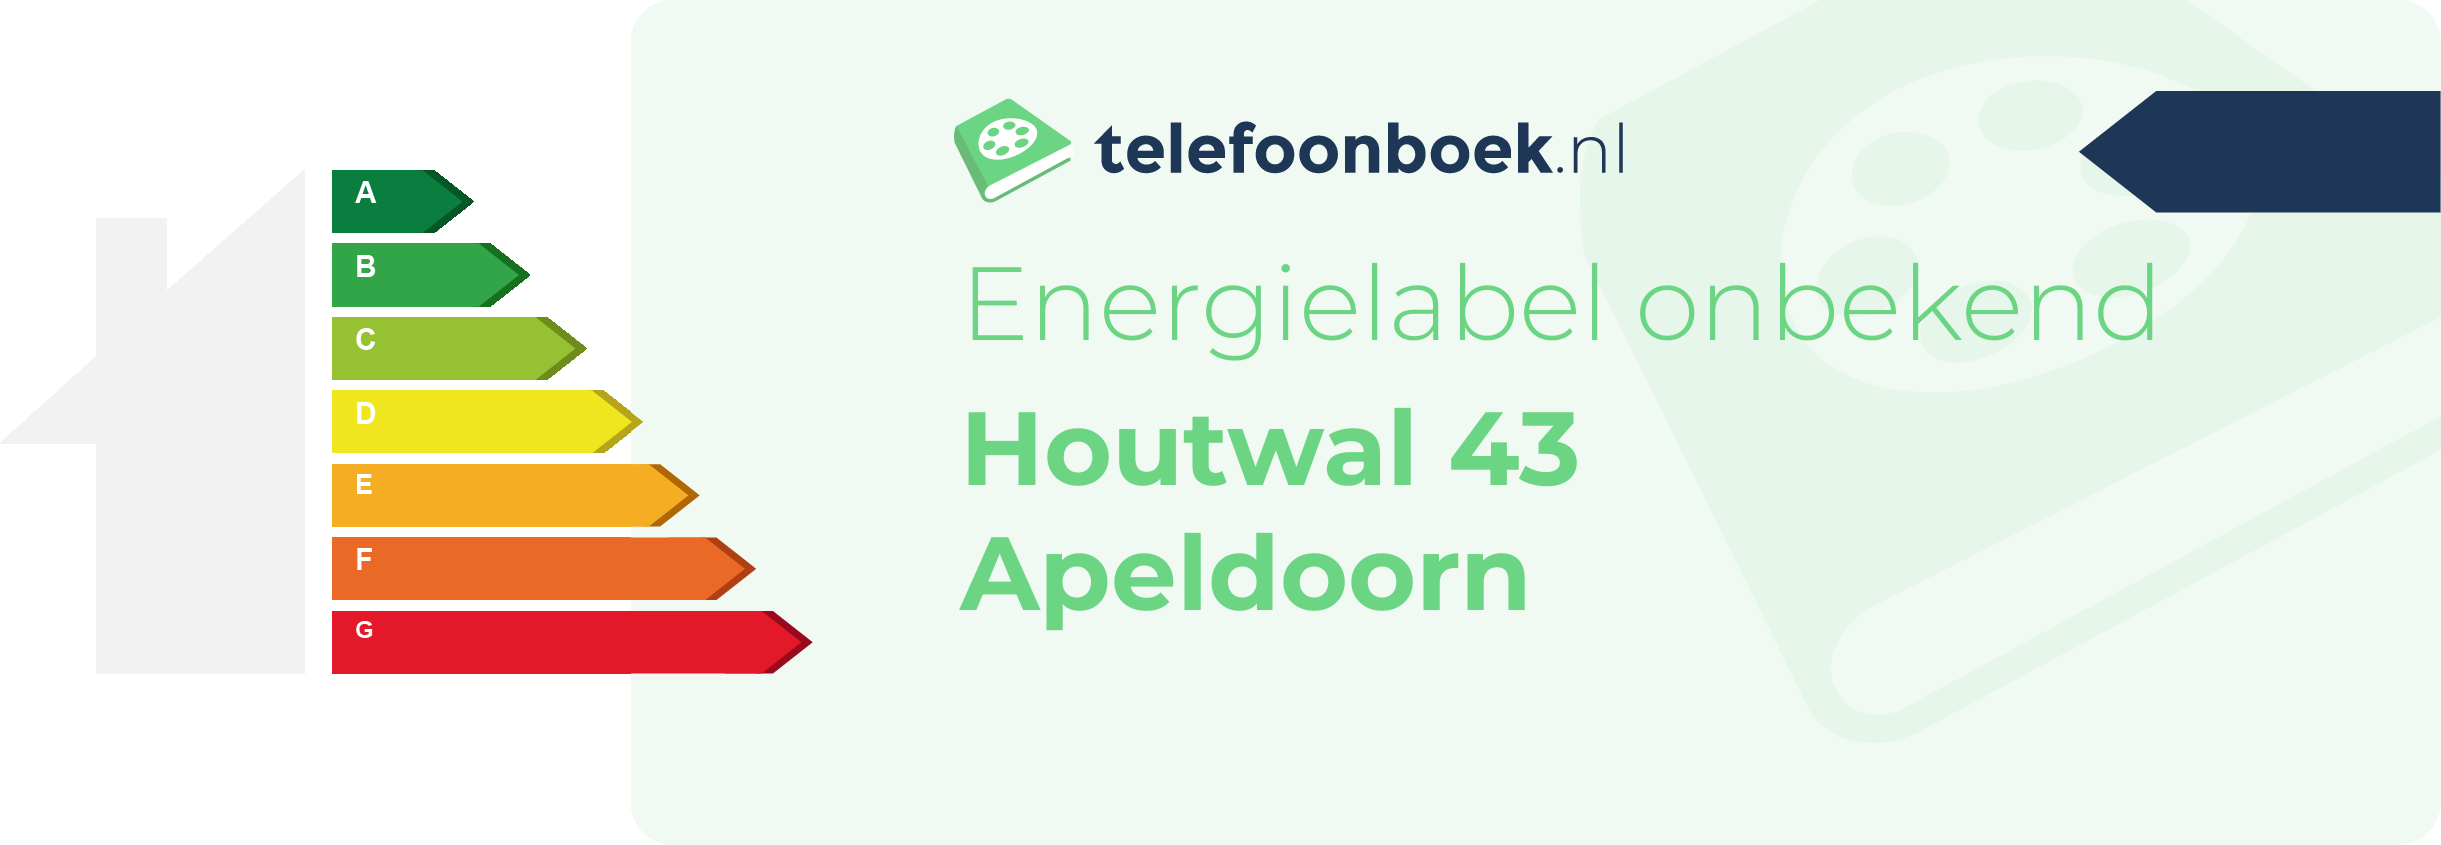 Energielabel Houtwal 43 Apeldoorn